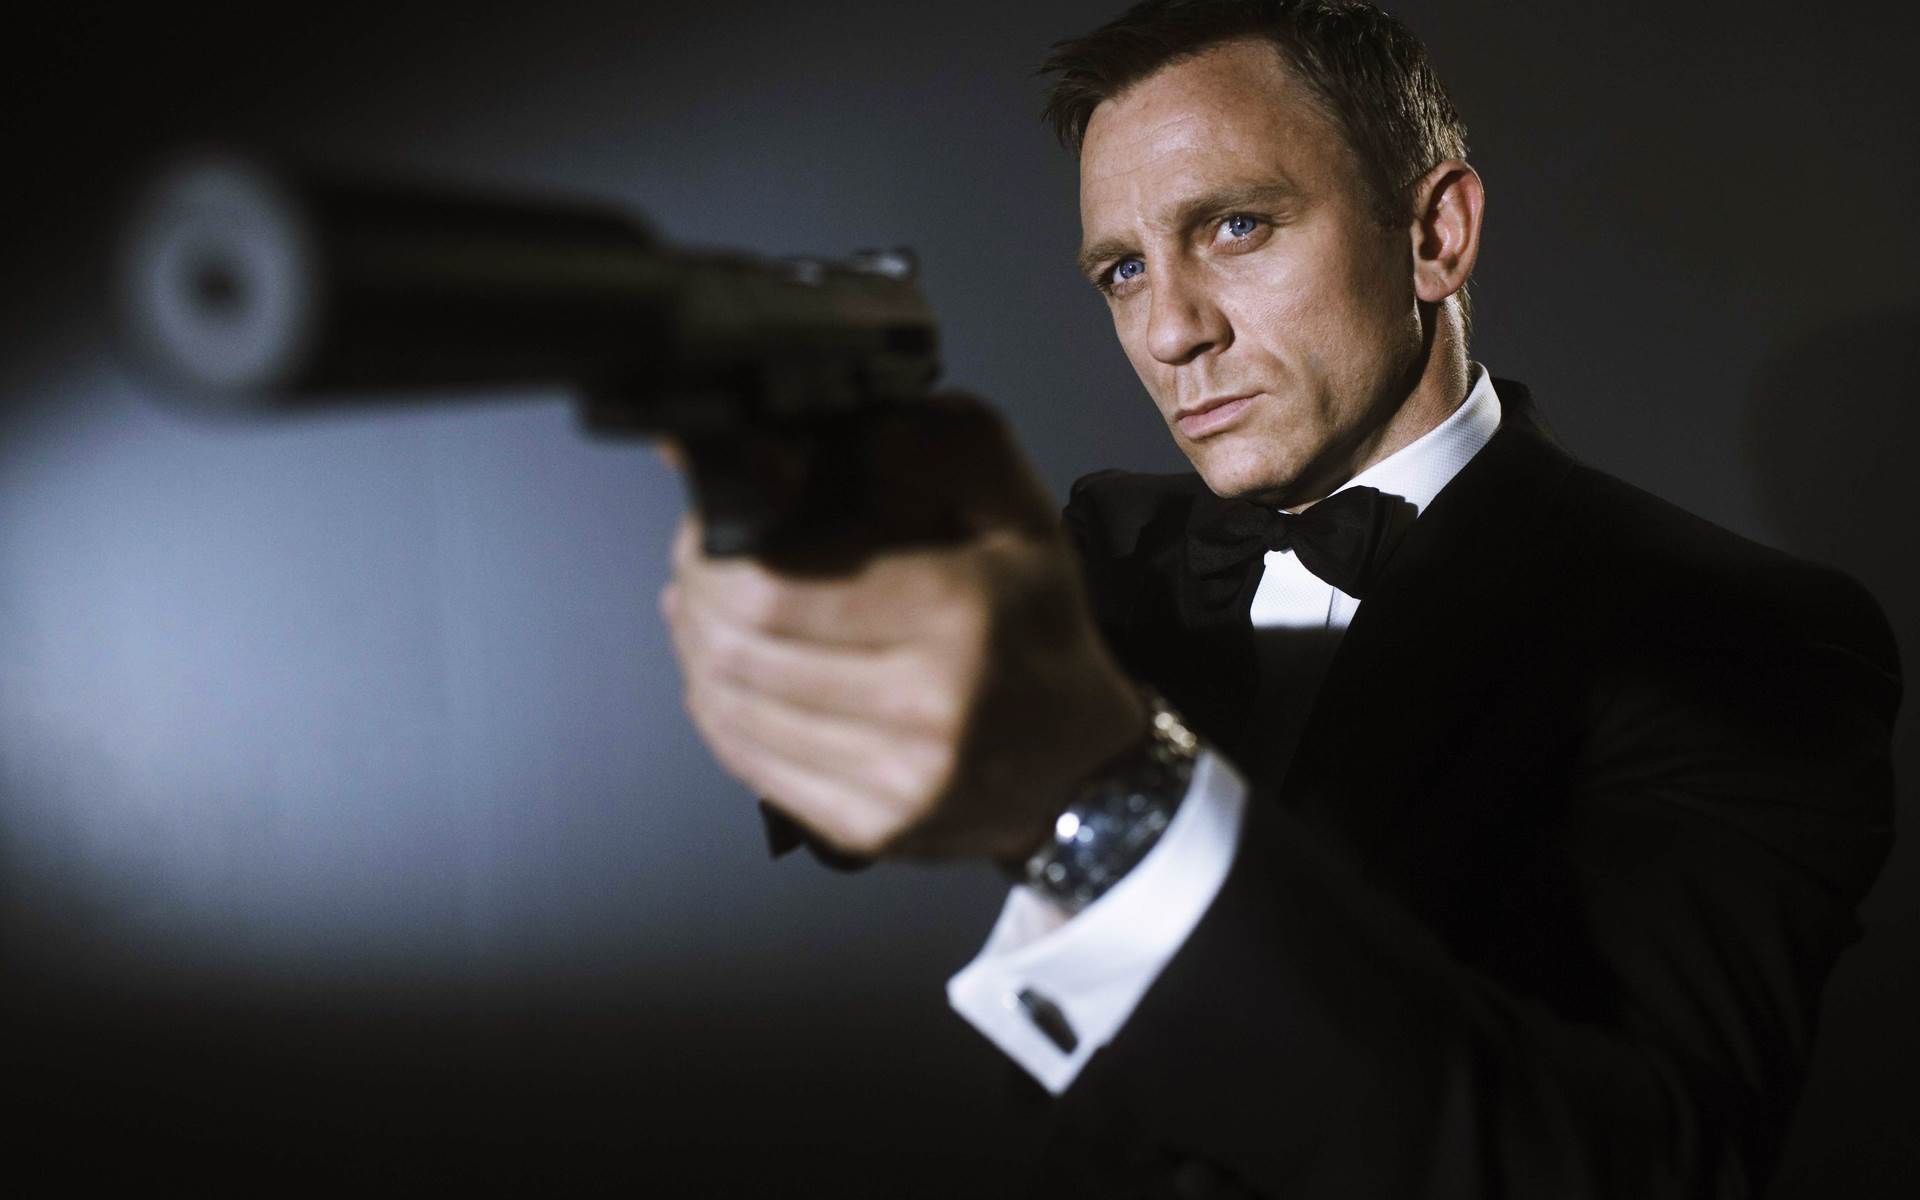 Bond 25 | Roteirista de 007: Cassino Royale teria contribuído em novo filme do agente secreto